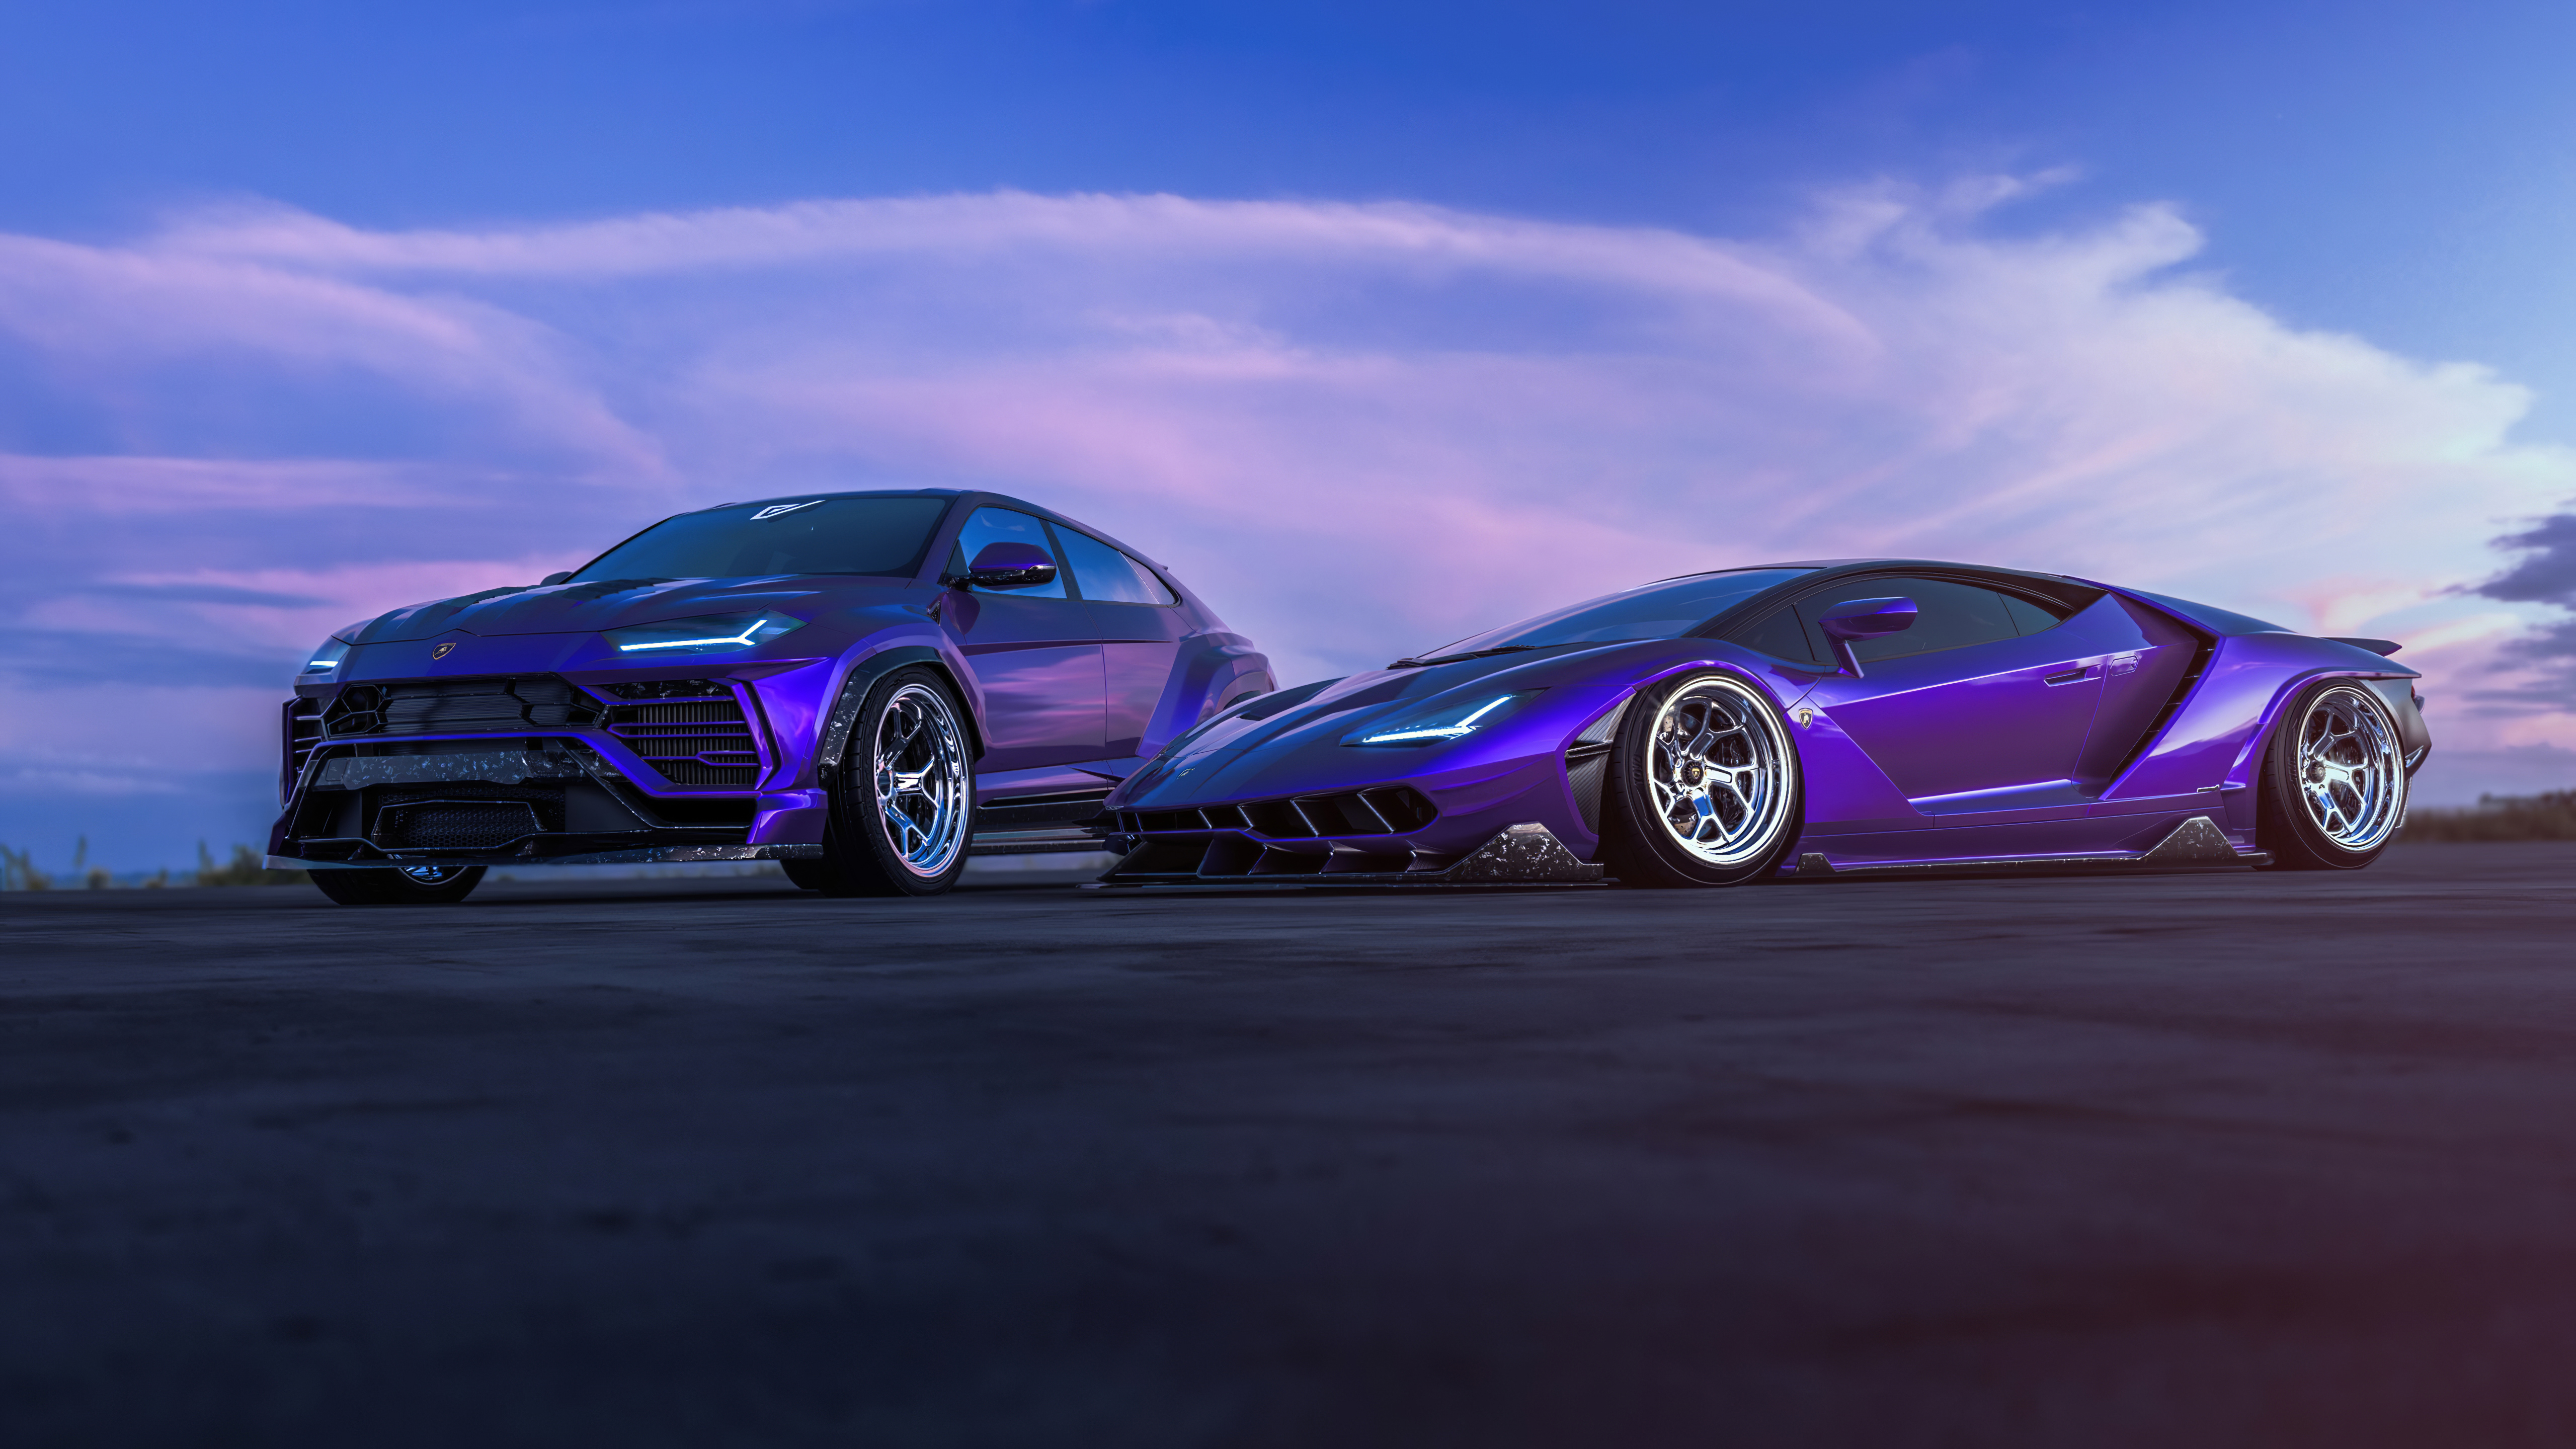 Lamborghini Centenario And Urus 4k, HD Cars, 4k Wallpapers ...